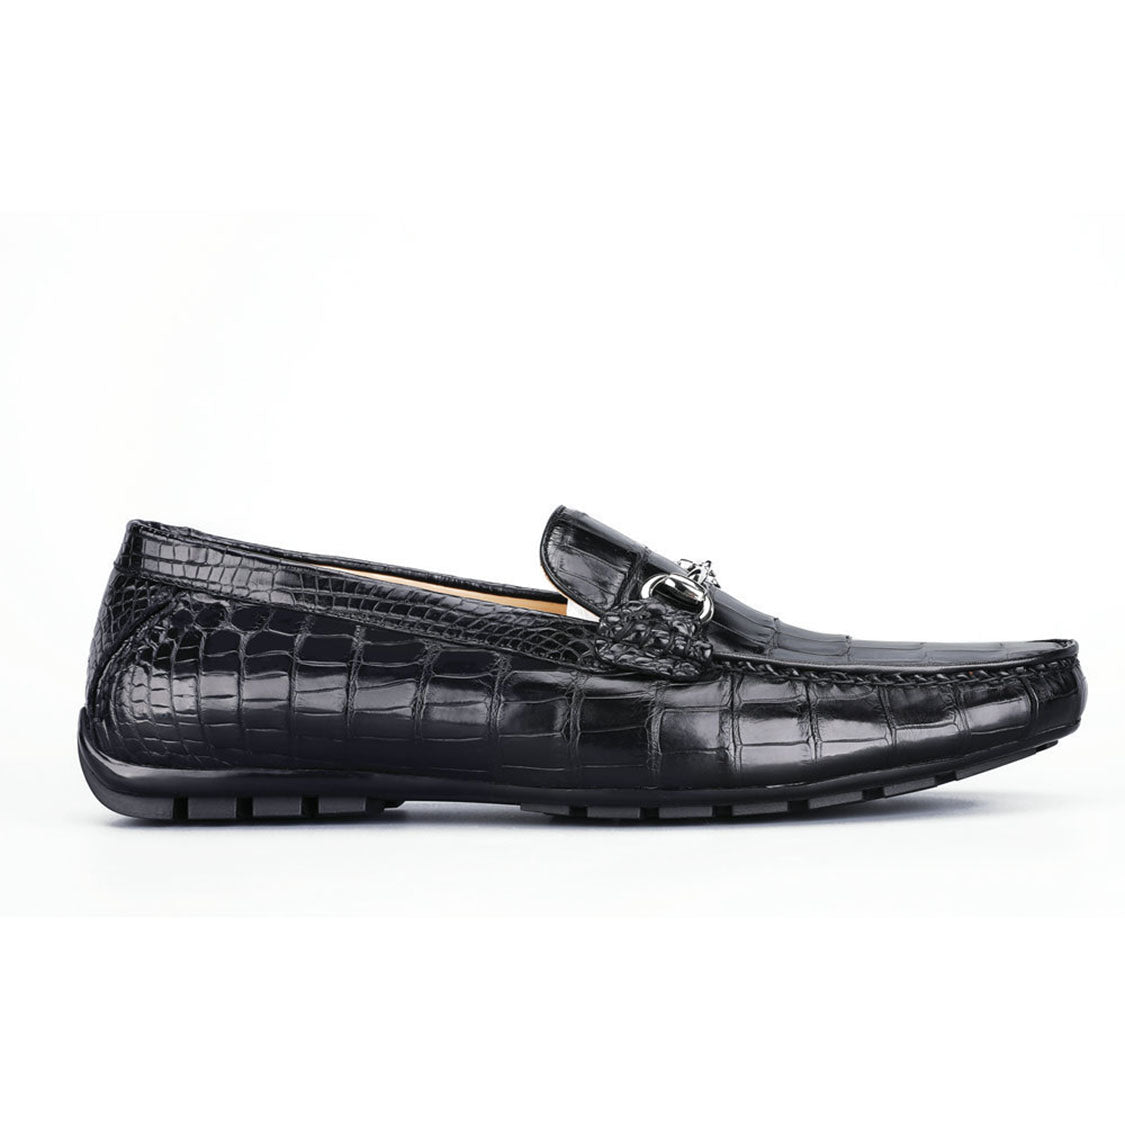 CROCODILE Brand Men's Socks [ 25-27cm ], Men's Fashion, Footwear, Shoe  inserts & accessories on Carousell